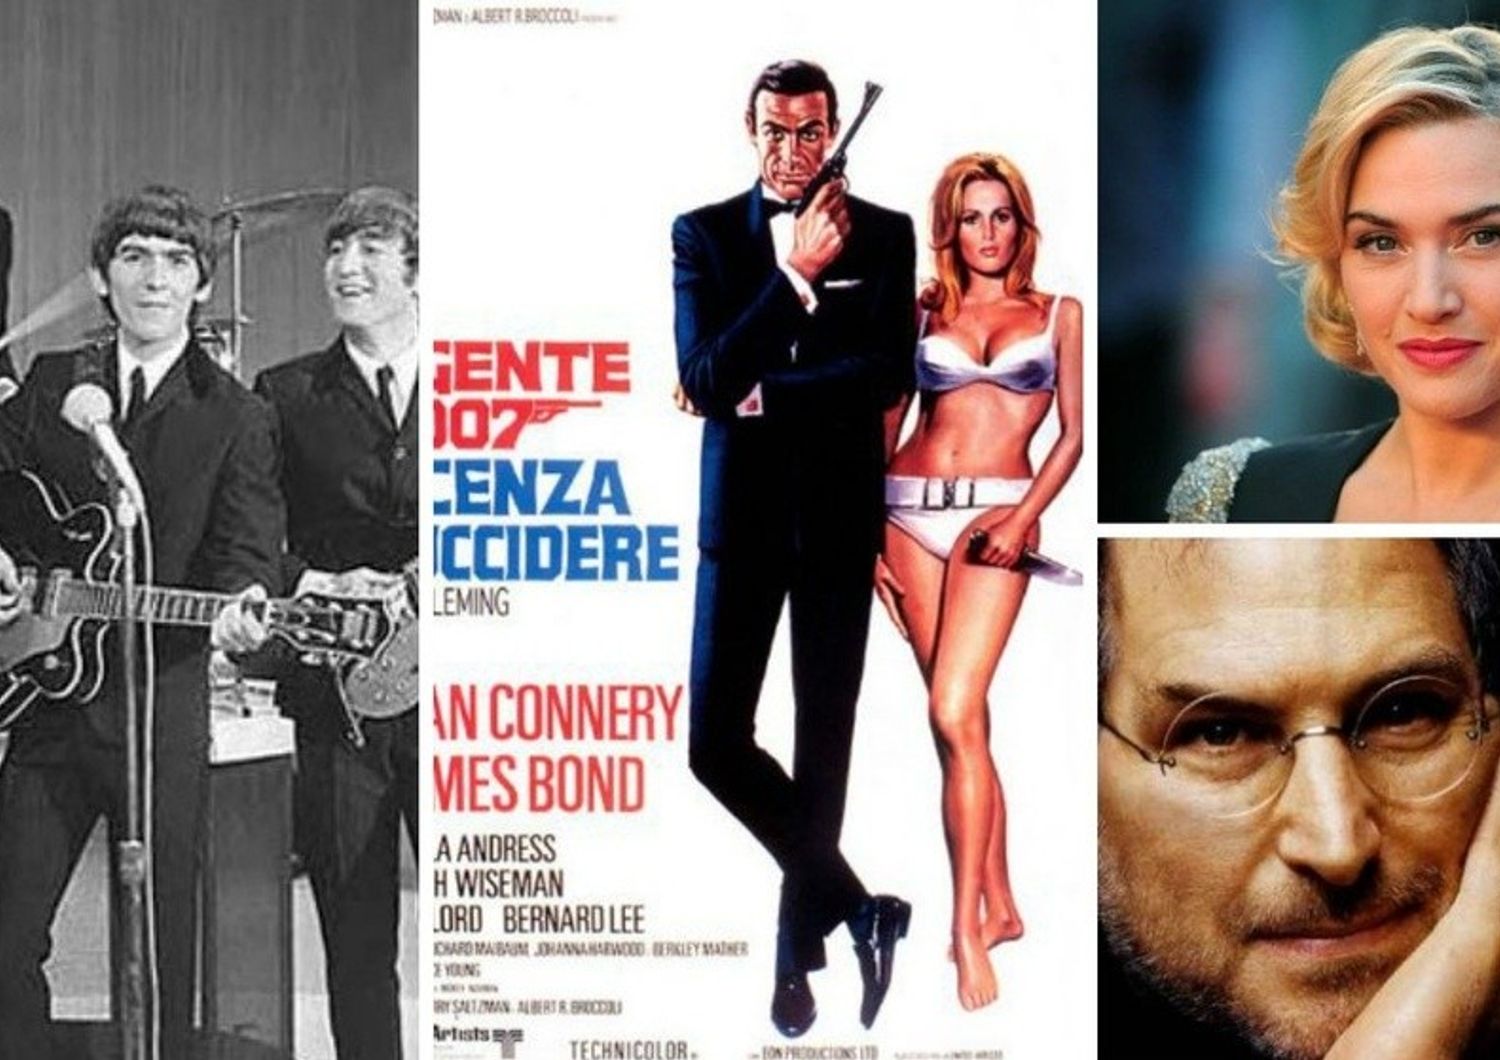 Accadde oggi: Nasce 007, Licenza di uccidere.&nbsp; Auguri a Kate Winslet, 40 anni